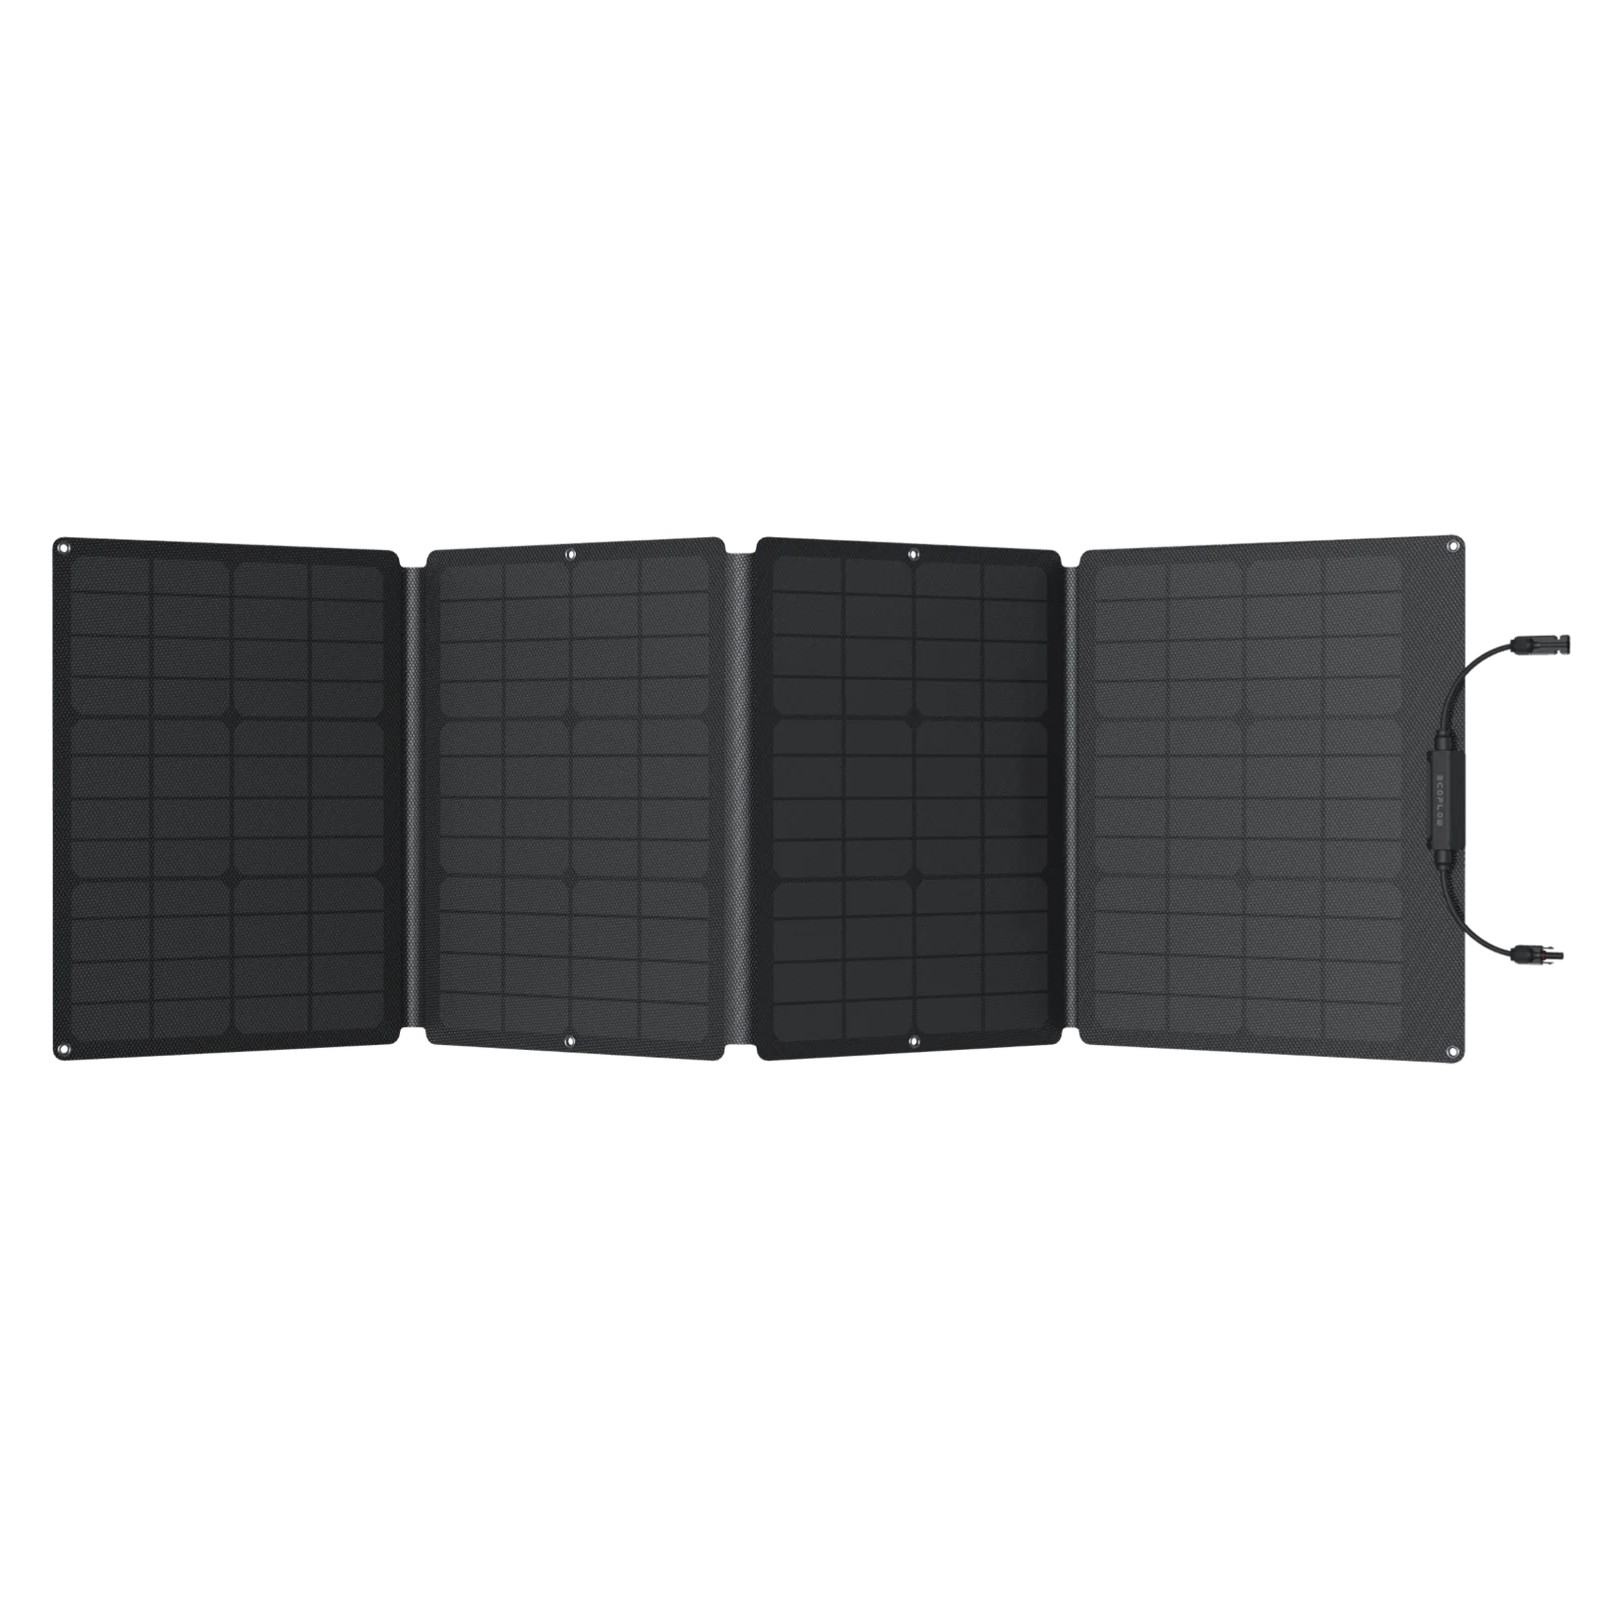 Ecoflow 110W Portable solar panel, monocrystalline -Rubicon Retail Portal